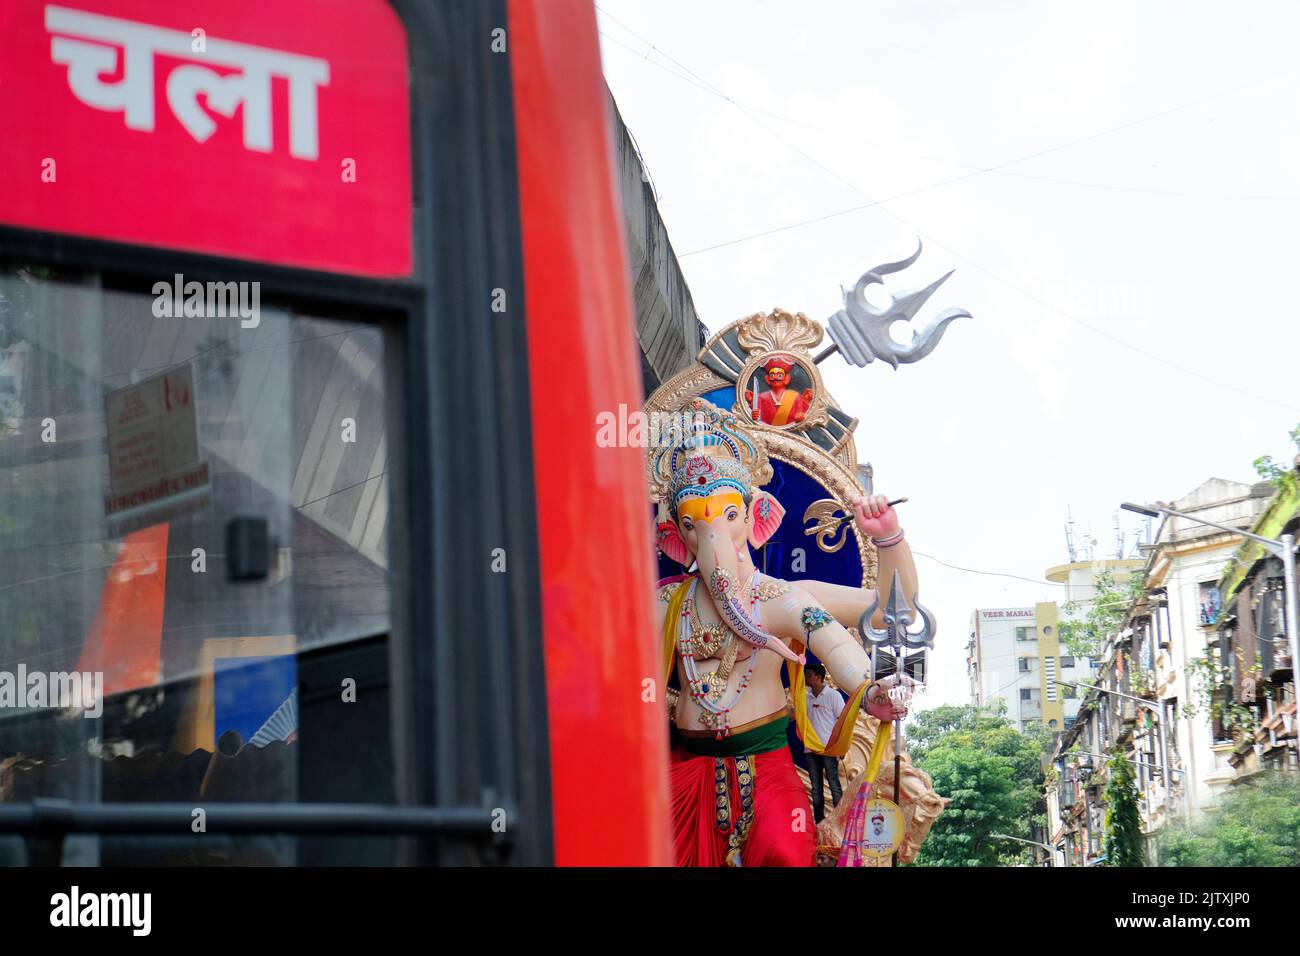 L'image du Ganpati Idol et LE MEILLEUR bus a été prise à Mumbai, Inde Banque D'Images